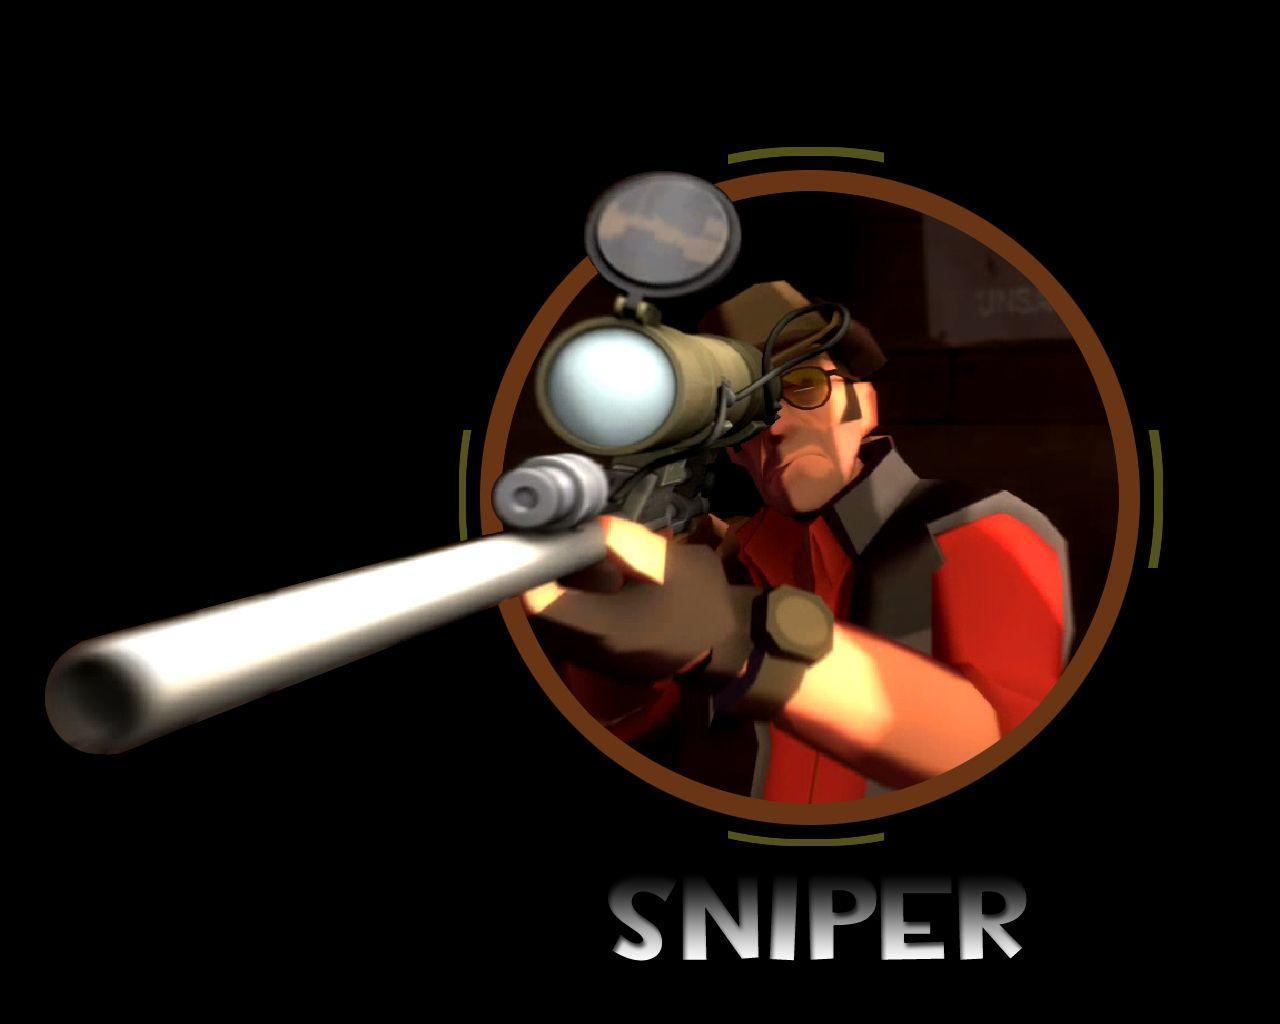 TF2 Sniper Wallpaper